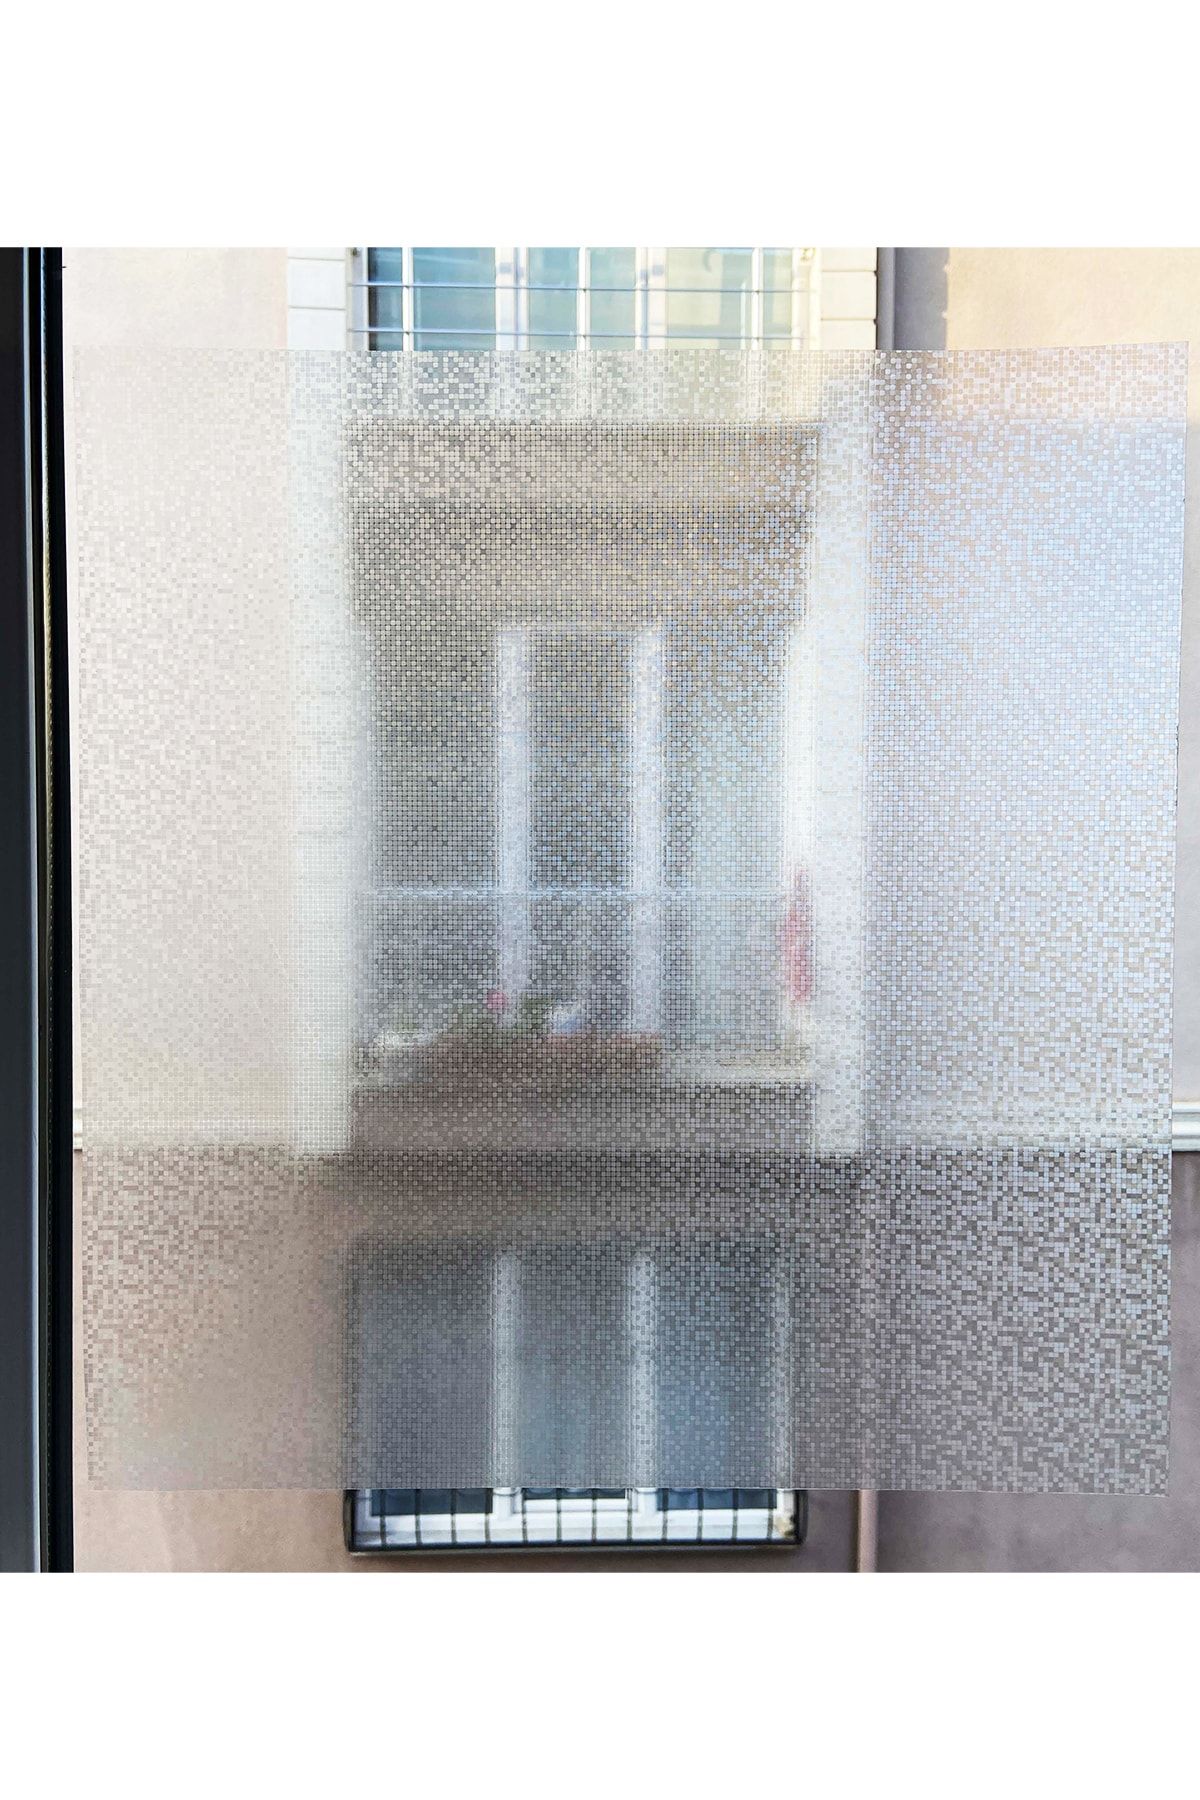 Örtücüm 45 Cm X 1 Metre Buzlu Statik Yapışkansız Kumlama Cam Folyo Ev  Balkon Duşakabin Desenli Cam Filmi Fiyatı, Yorumları - Trendyol